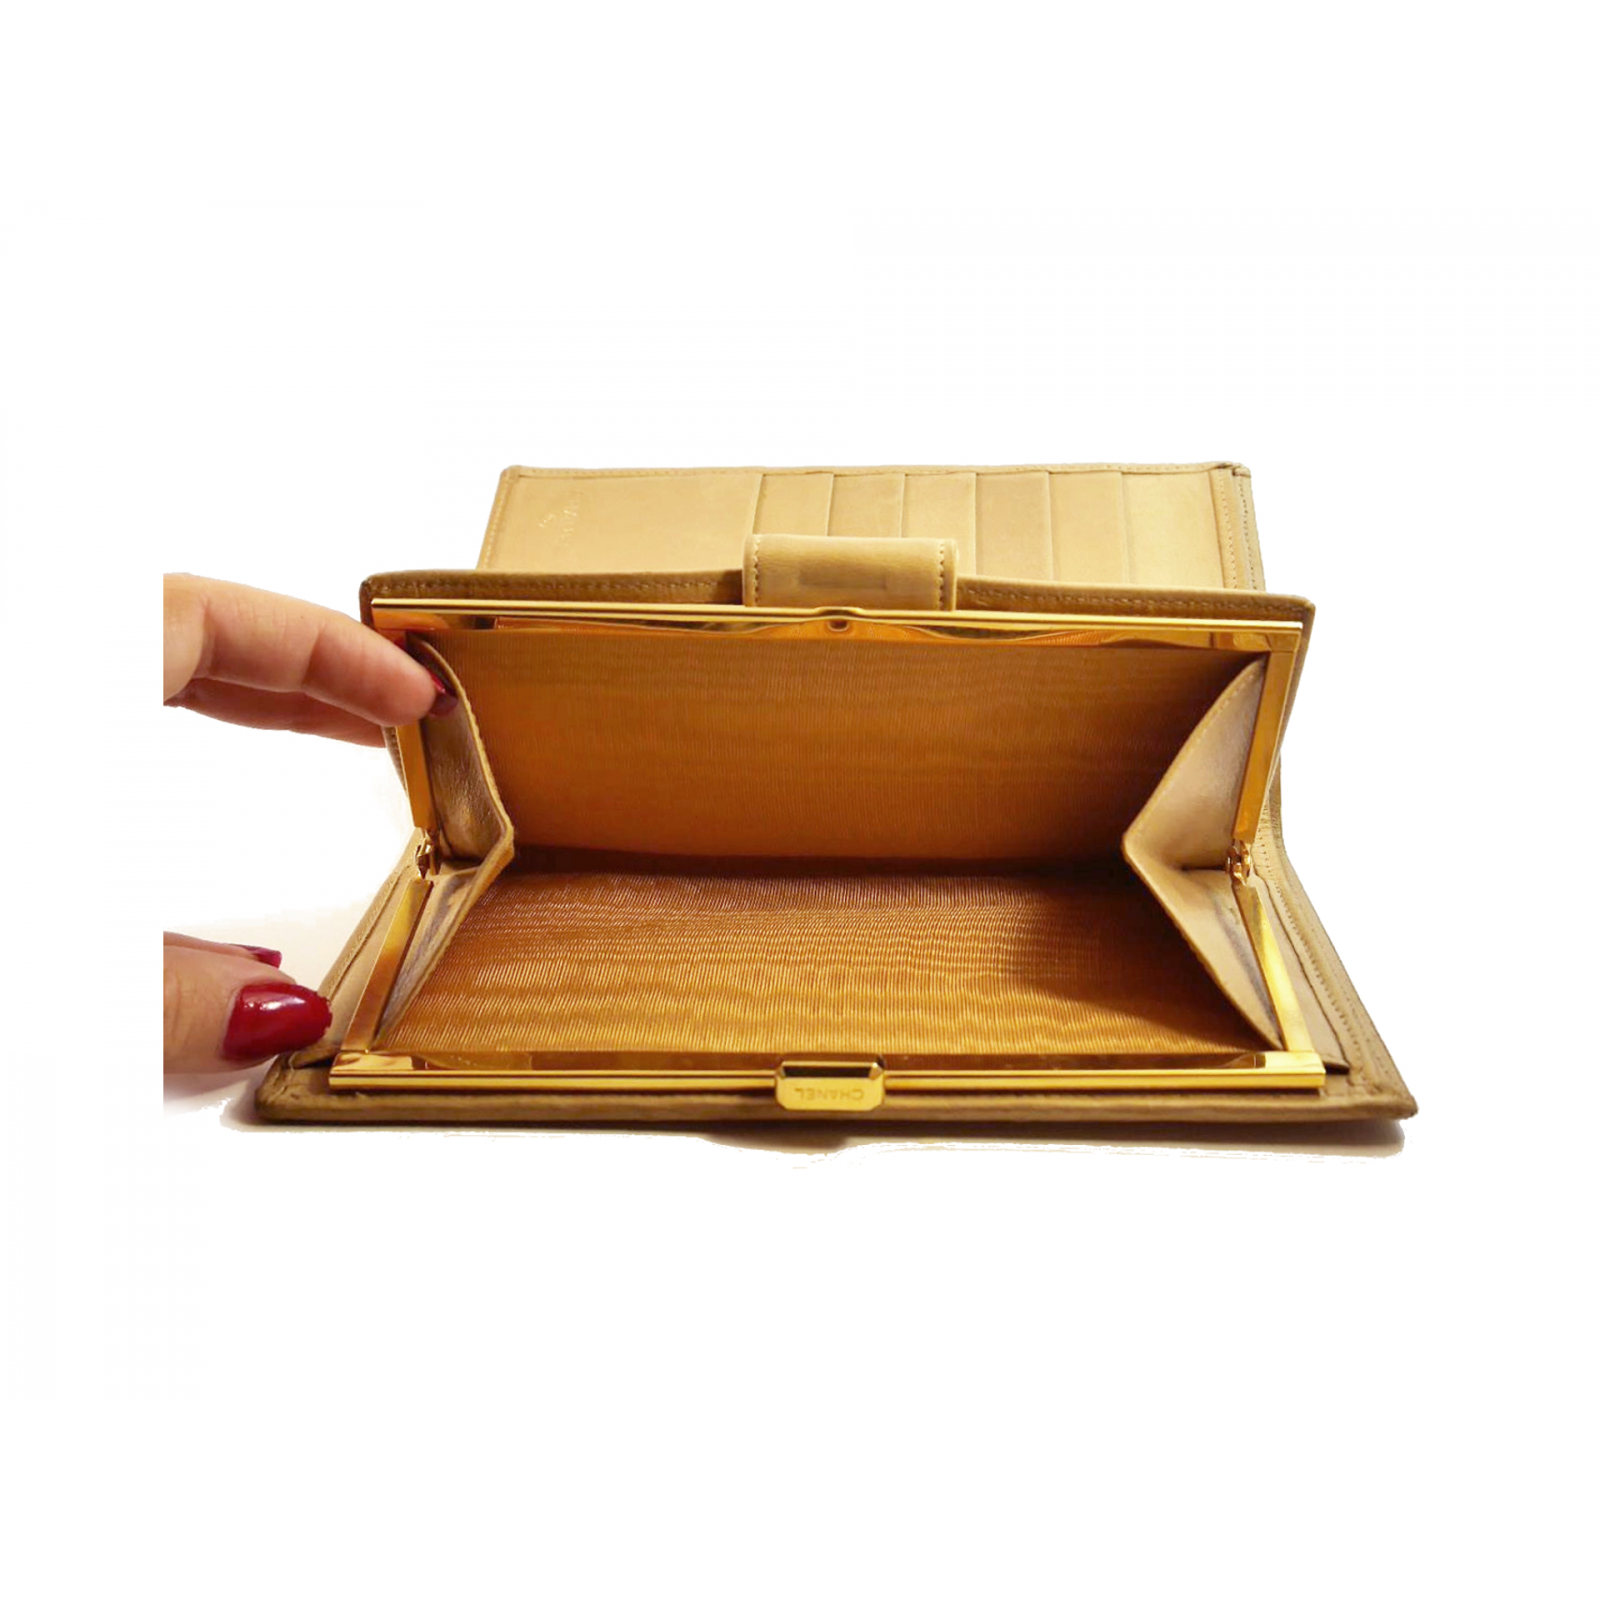 Chanel klasyczny pikowany portfel beżowy ze złotym okuciem